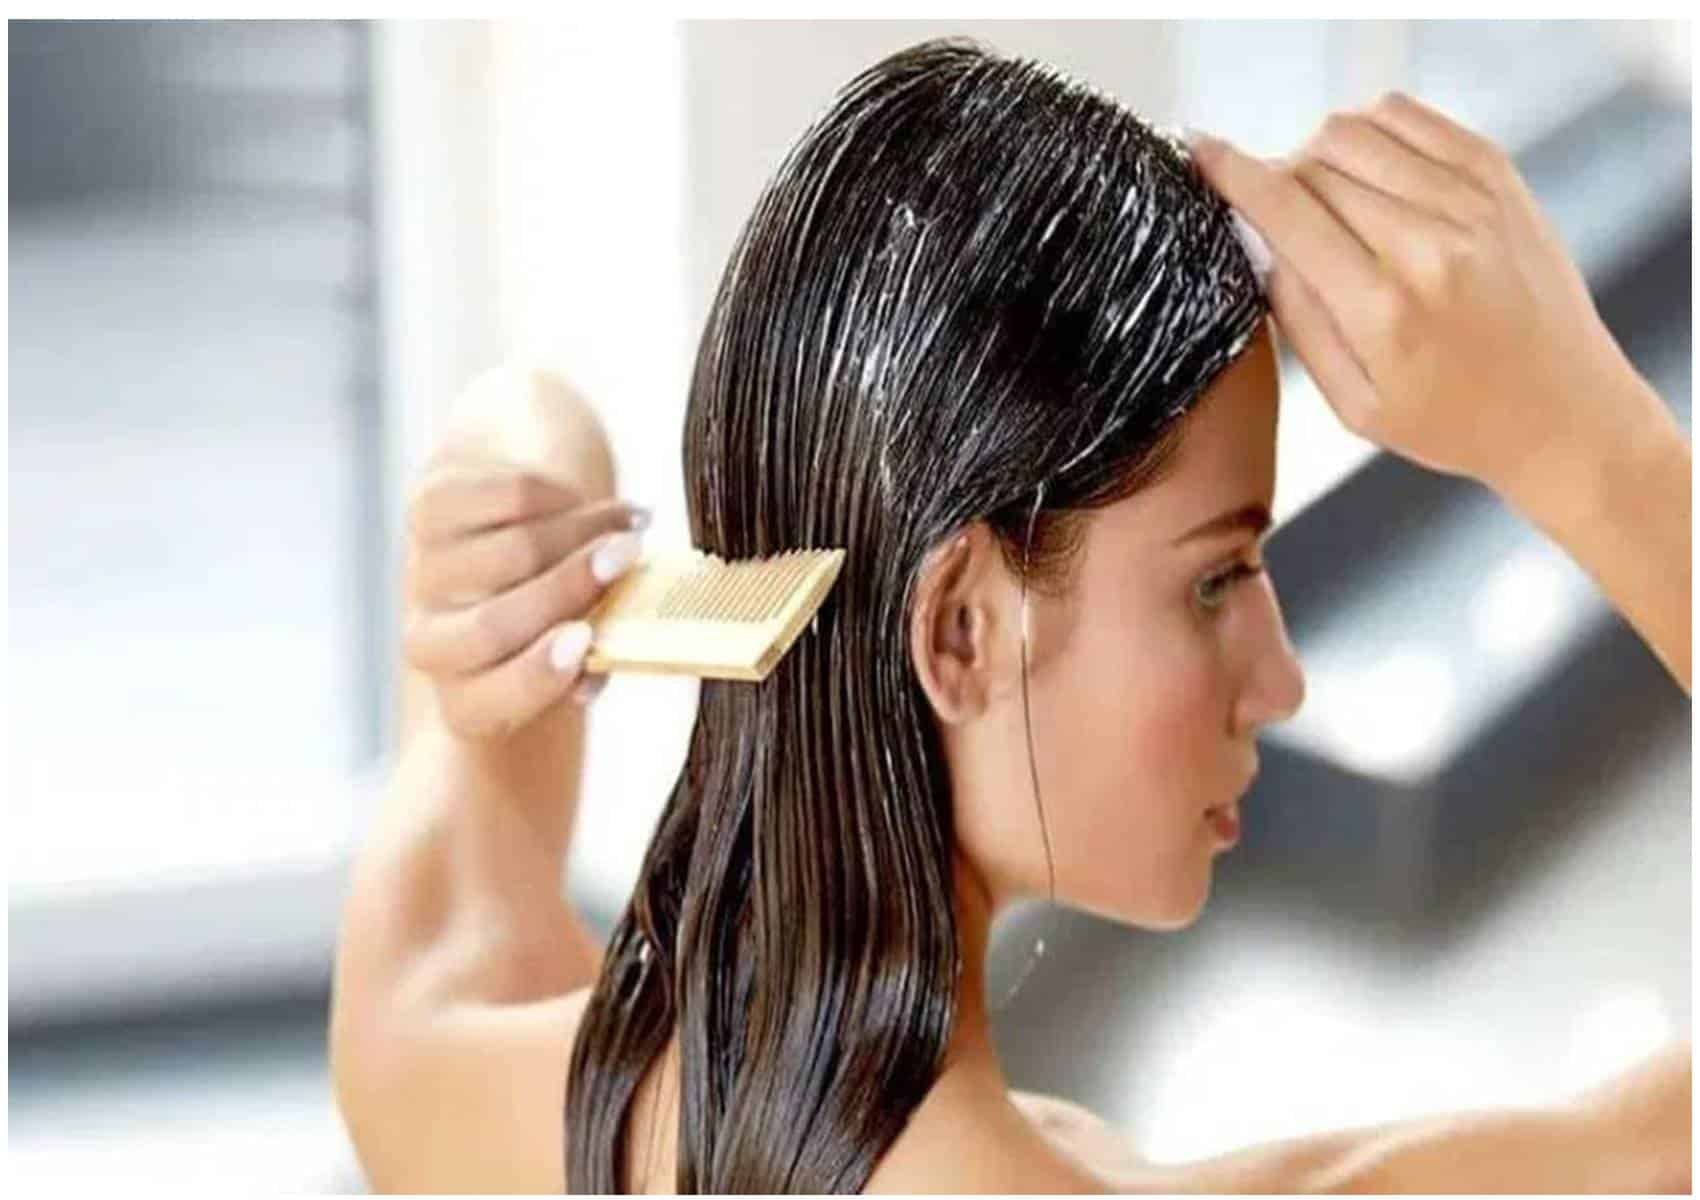 Não compre: aprenda a fazer seu próprio shampoo anti-queda de cabelo em casa